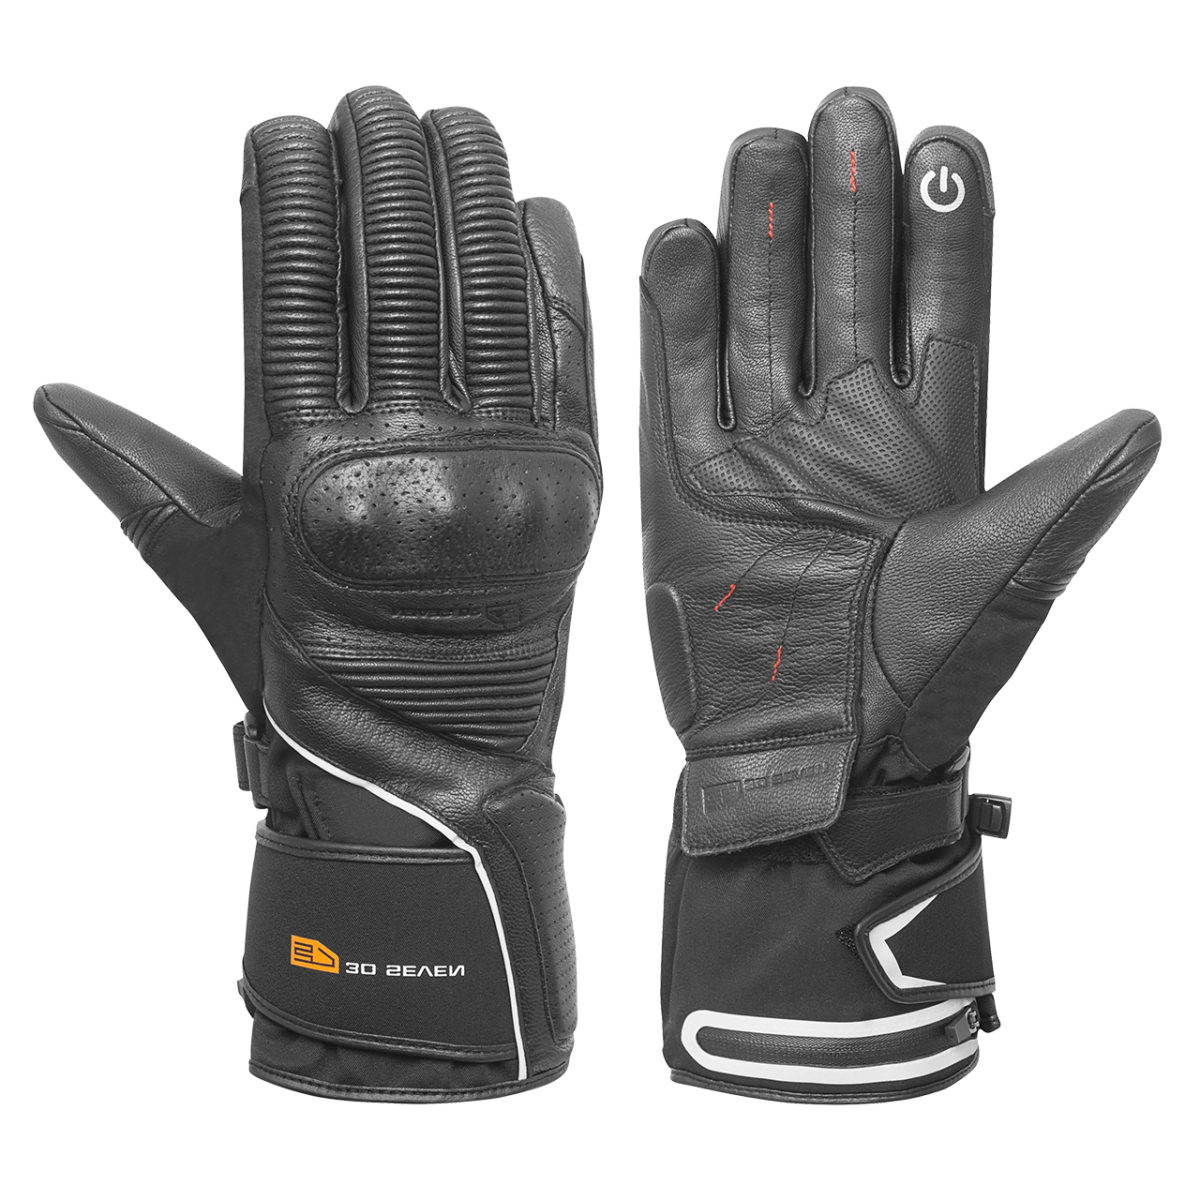 Beheizte Handschuhe Motorrad Winter Warm Elektrische Heizhandschuhe Heated Glove 